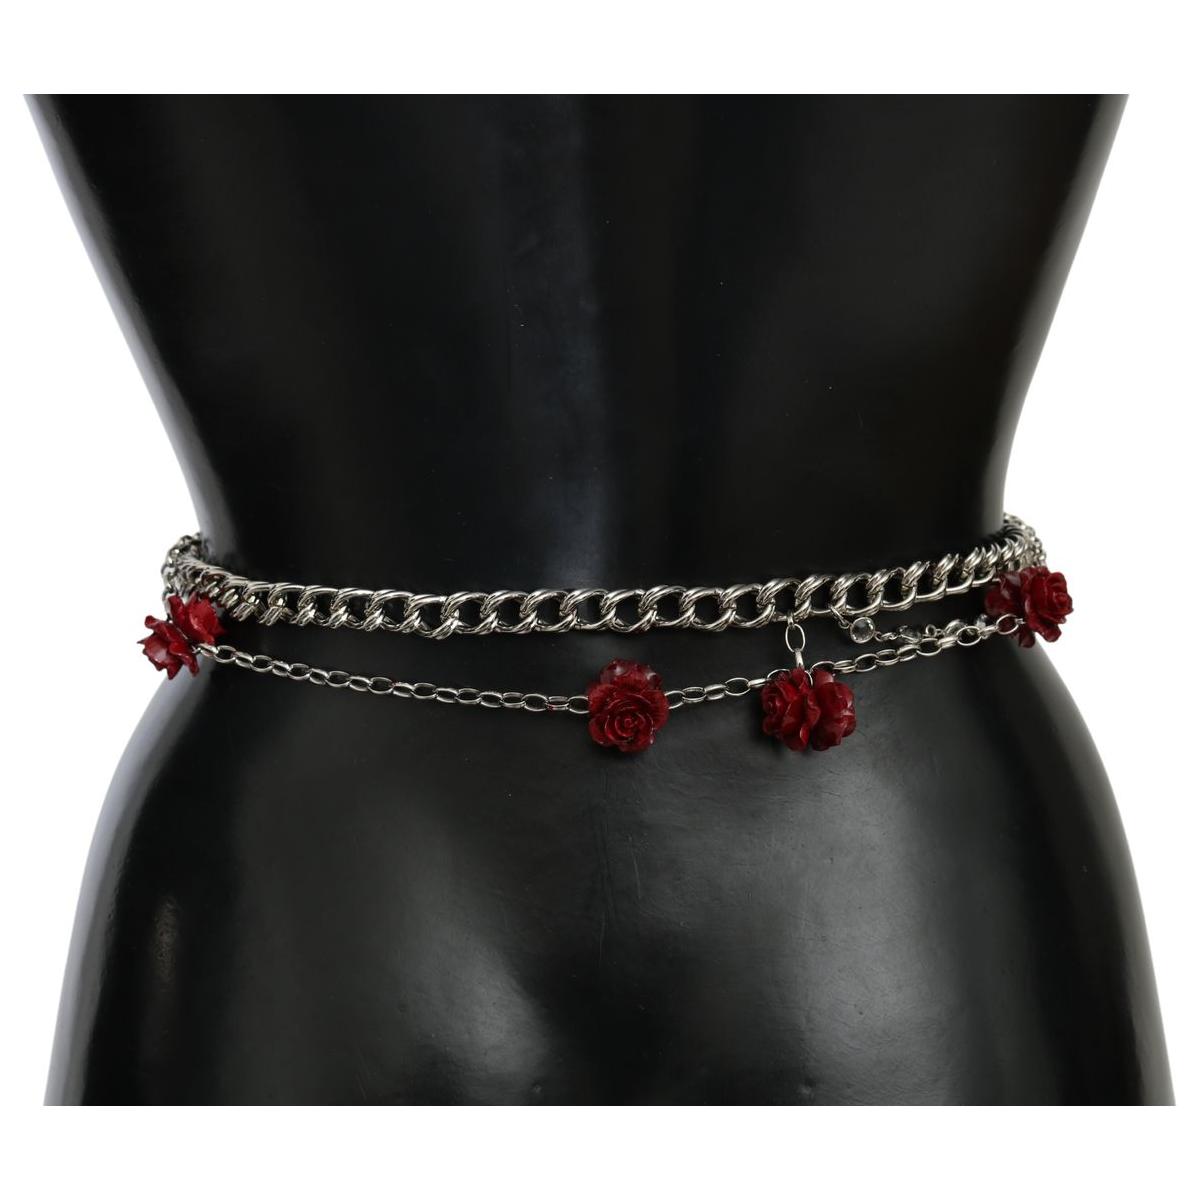 Dolce & Gabbana Elegant Floral Rose Waist Belt in Vibrant Red Belt red-leather-roses-floral-silver-waist-belt IMG_9989-fde78514-edb.jpg